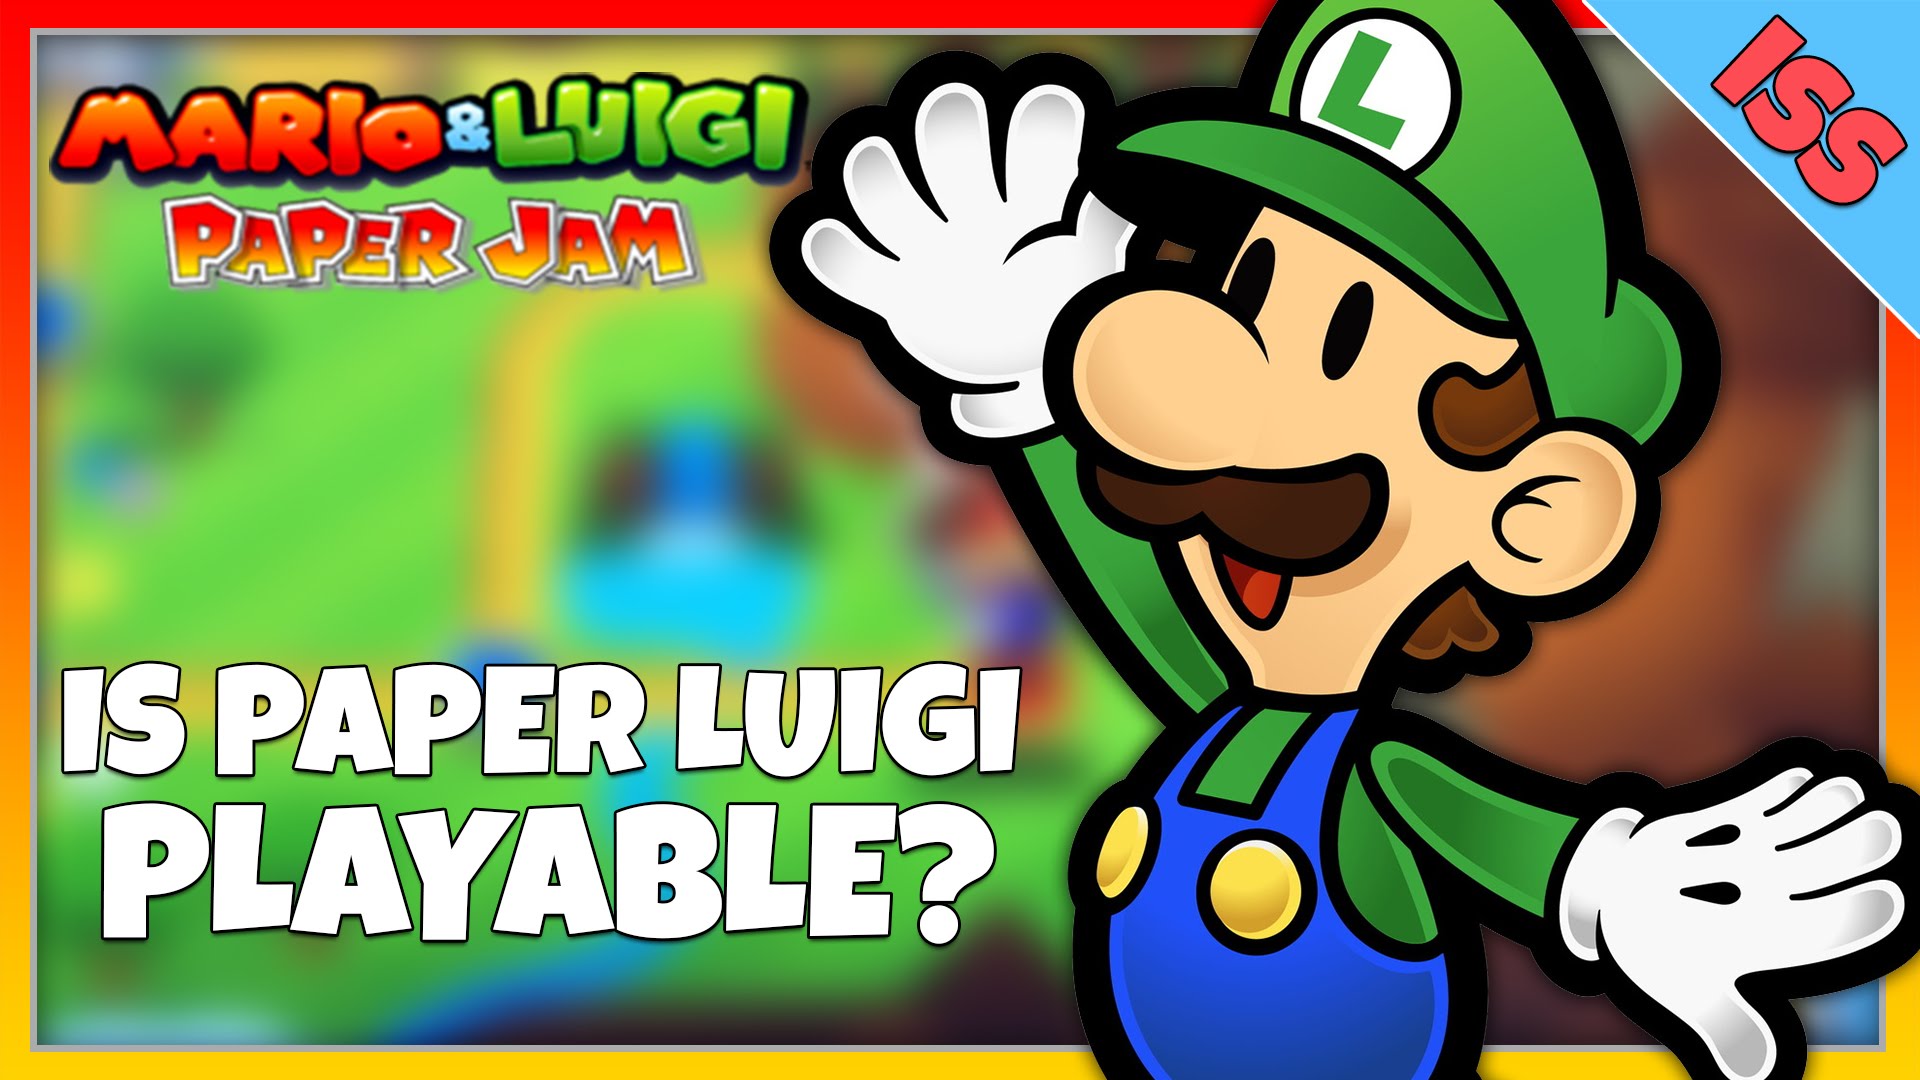 Amazing Mario & Luigi: Paper Jam Pictures & Backgrounds